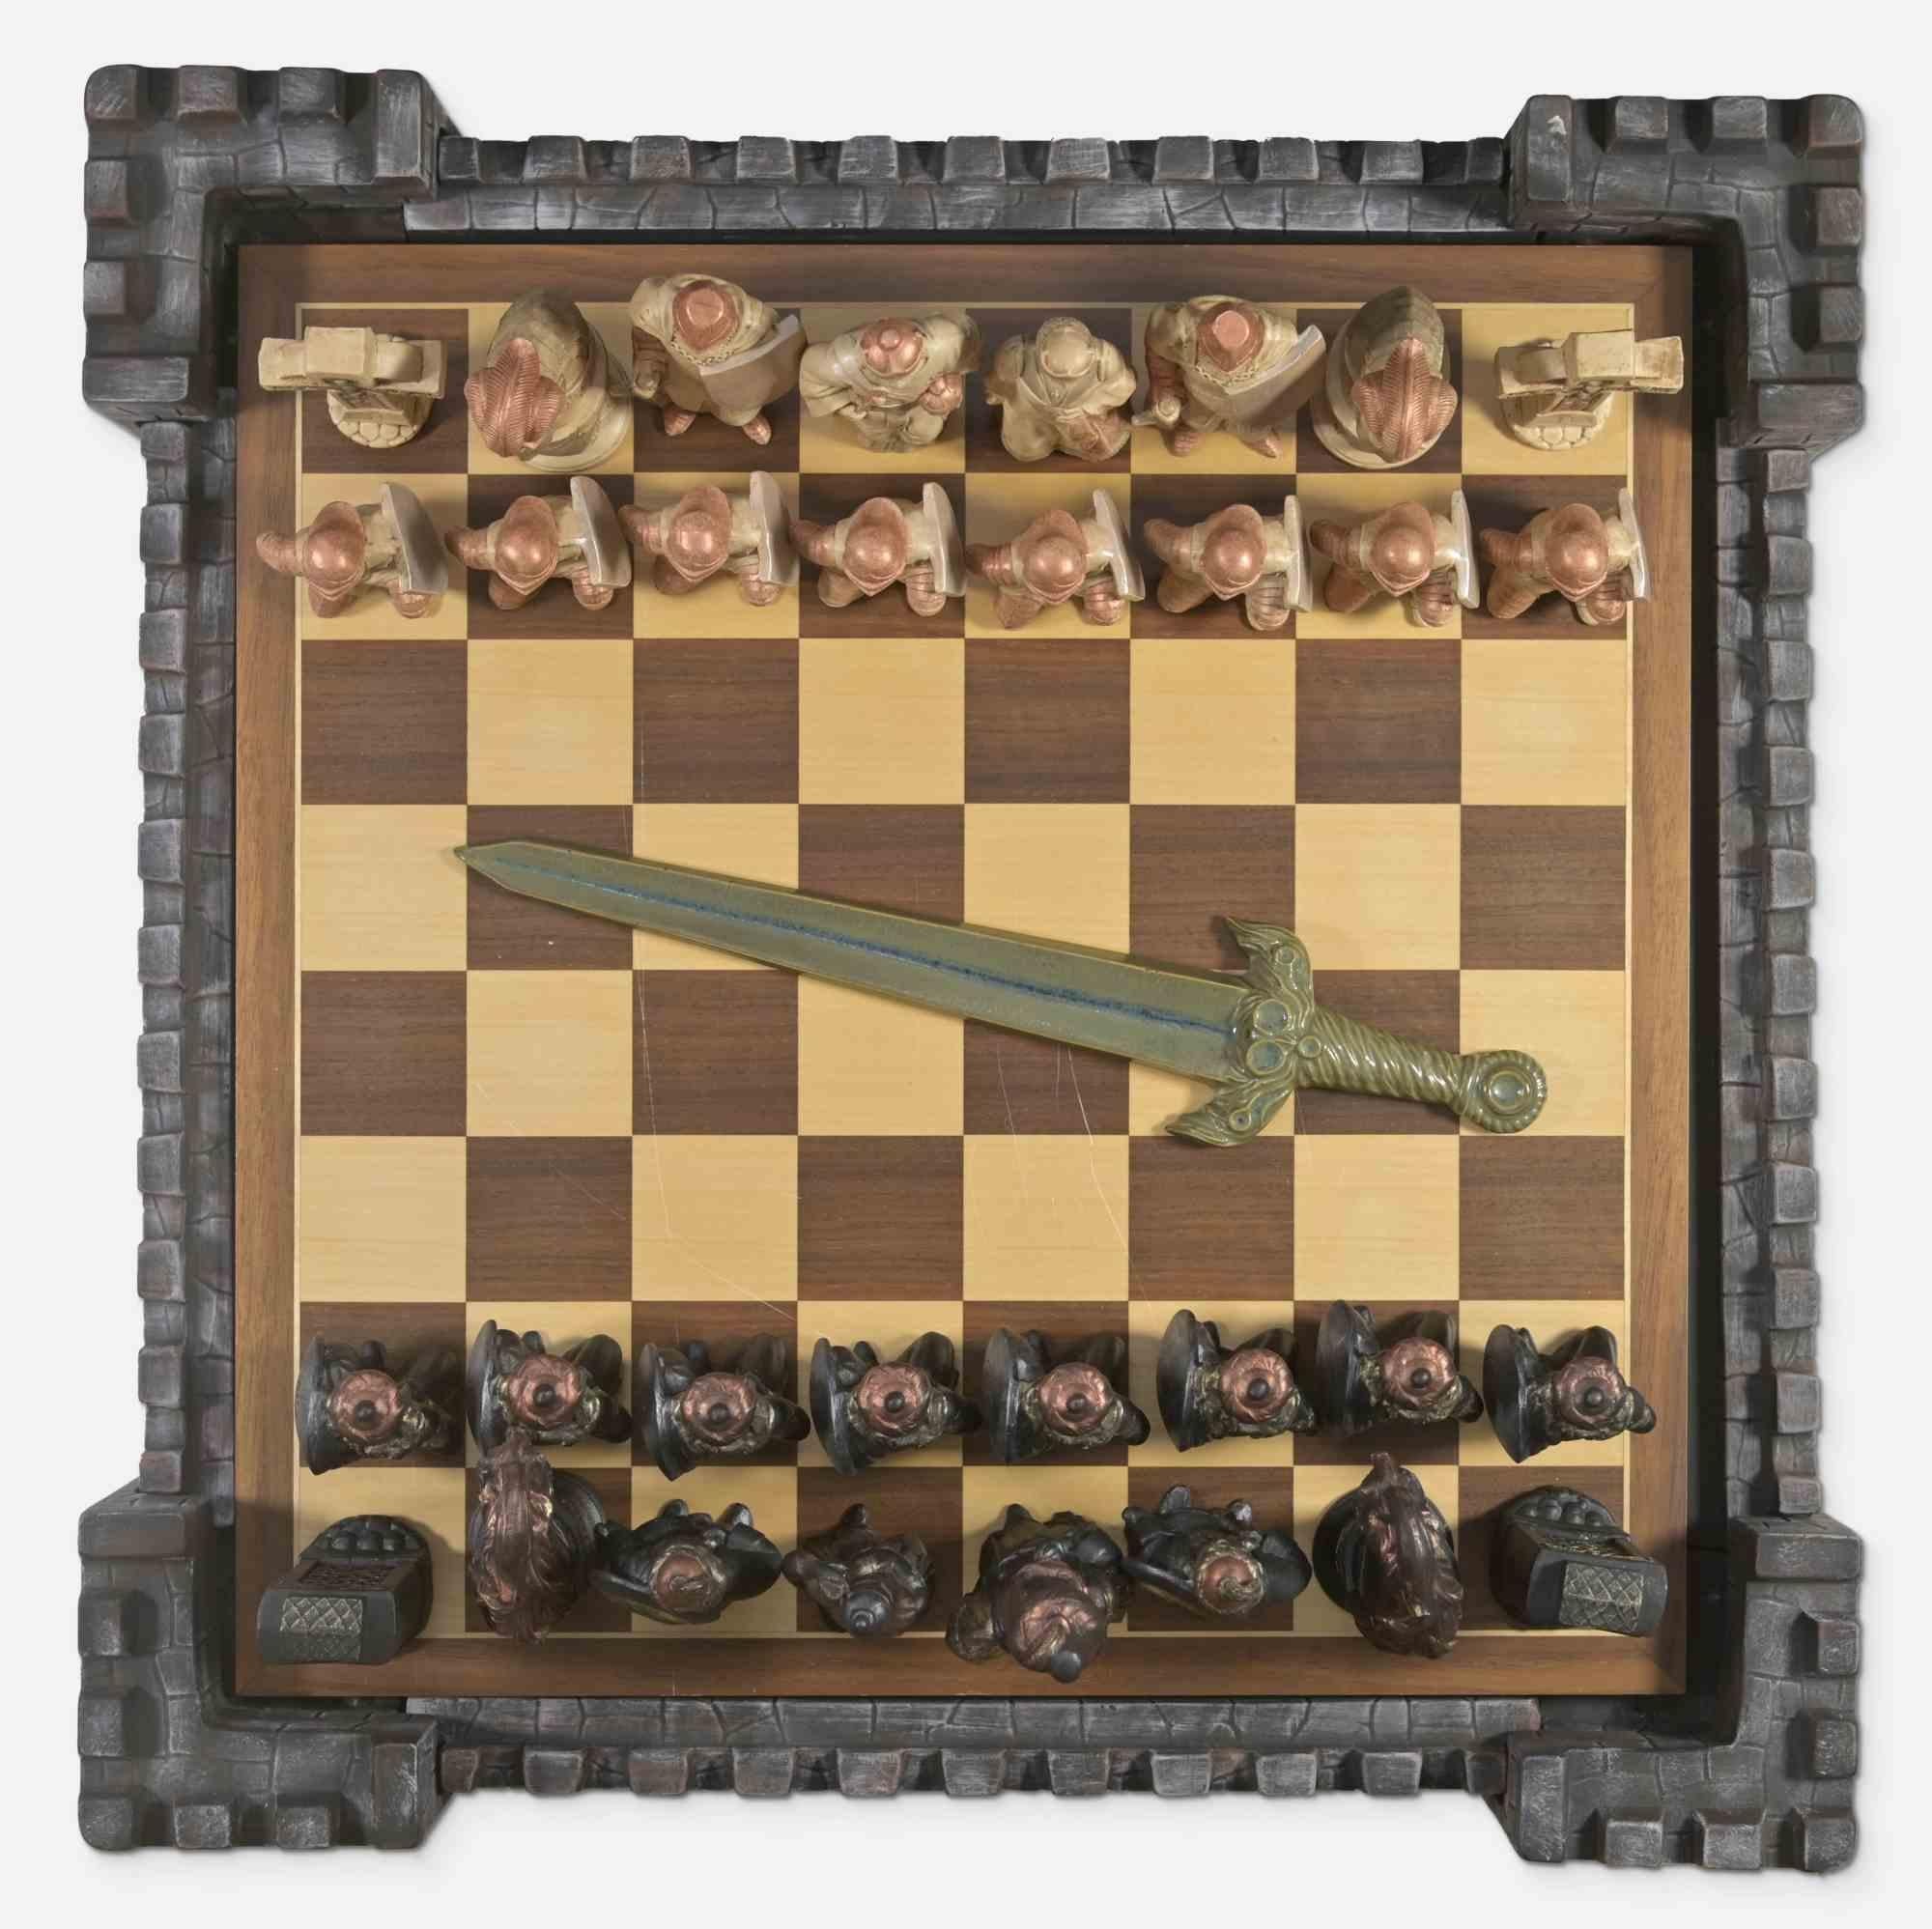 Dieses mittelalterliche Schachspiel aus Keramik besteht aus mittelalterlichen Figuren und einem hölzernen Schachbrett. 

Abmessungen: cm 26 x 60 x 60.

Gute Bedingungen.

Die Form des Sets erinnert an eine mittelalterliche Burg.

Wenn Sie von